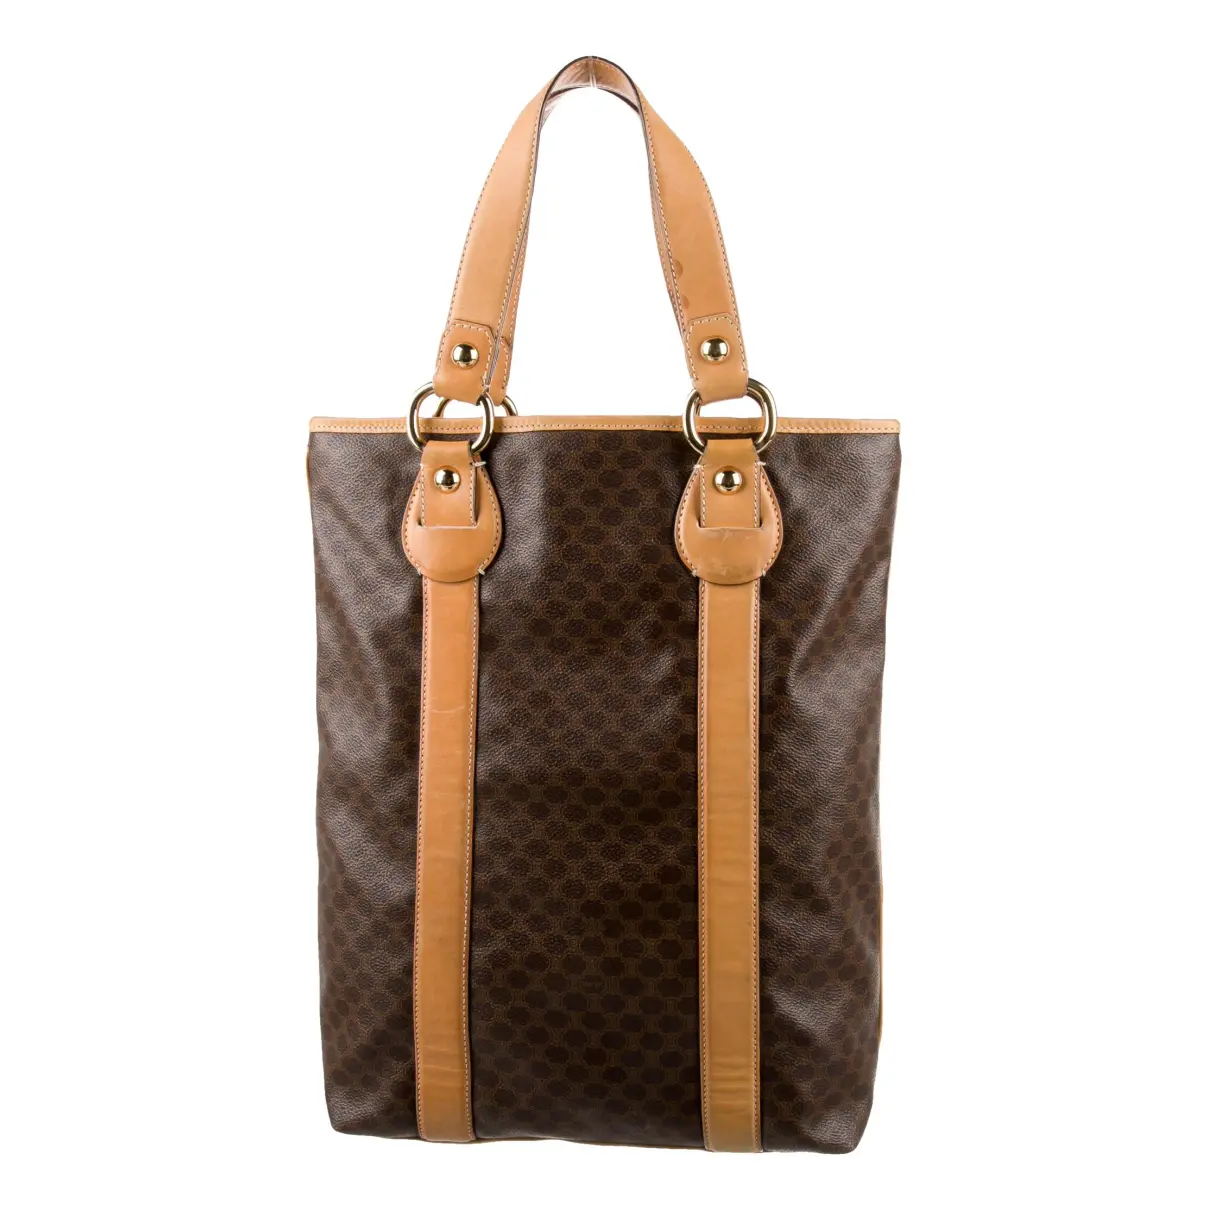 Cabas leather handbag